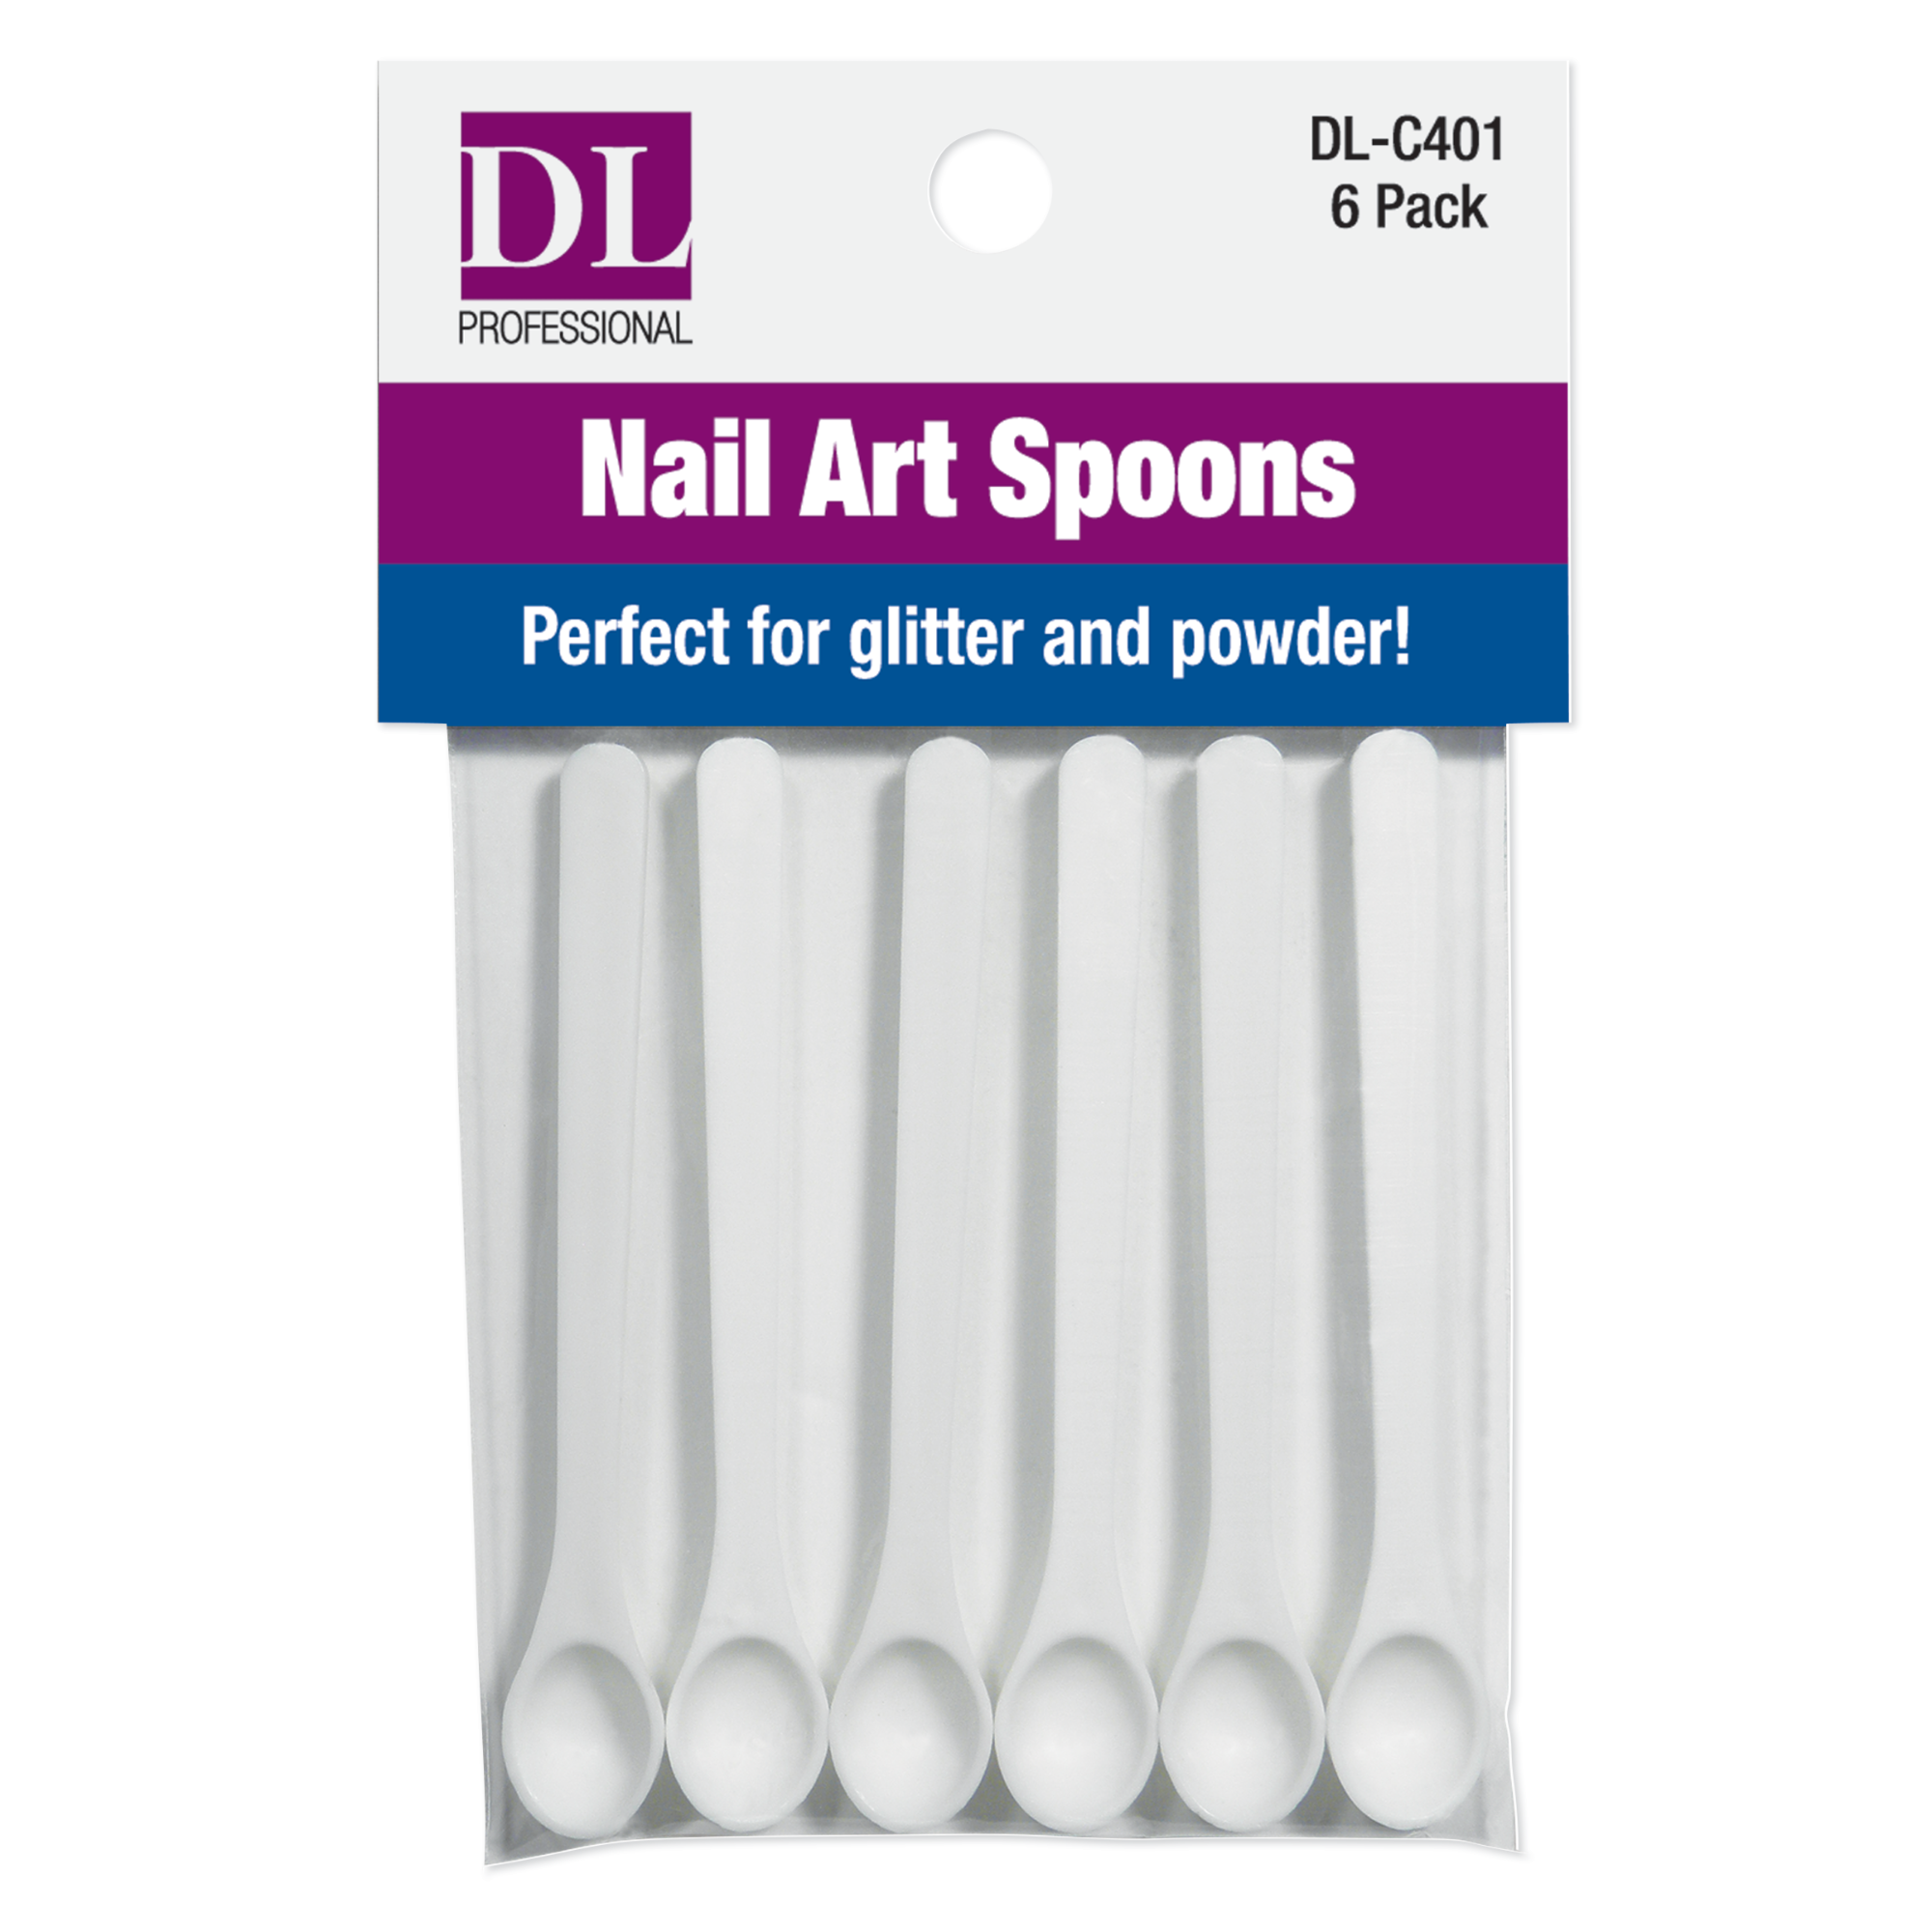 Nail Art Spoons